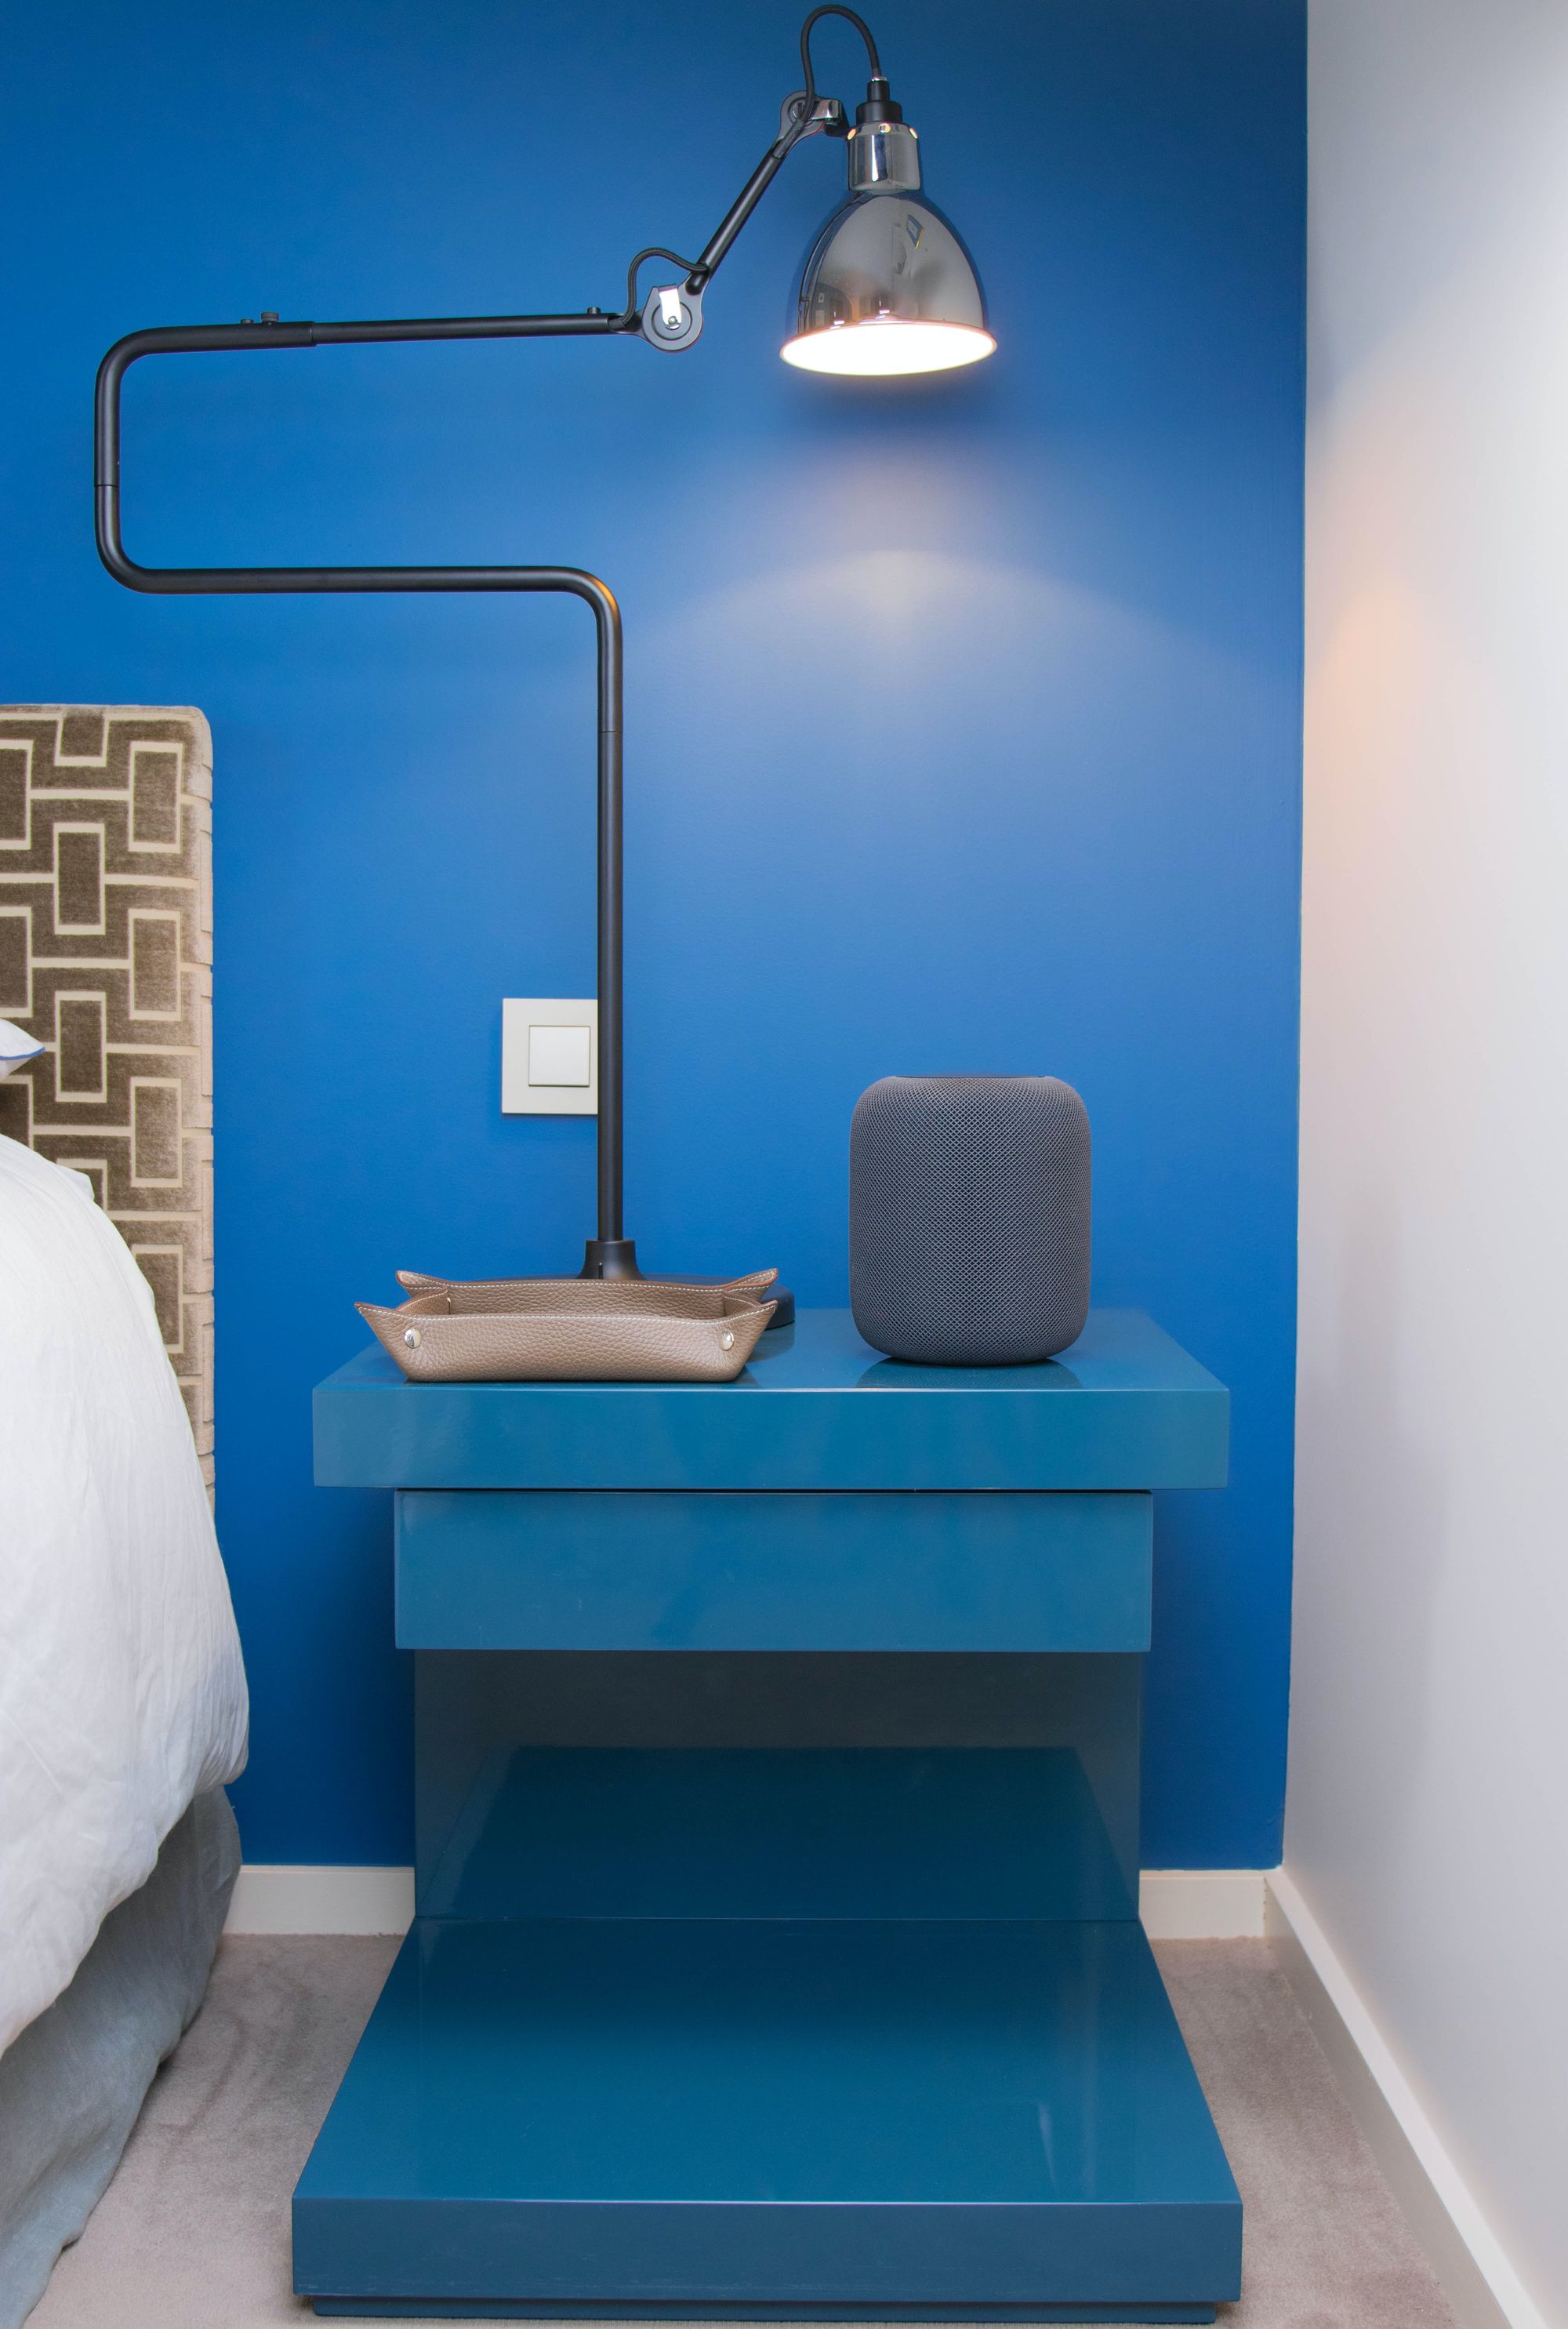 dormitorio con mesita de noche y pared azul, bandeja de piel, alexa y lámpara